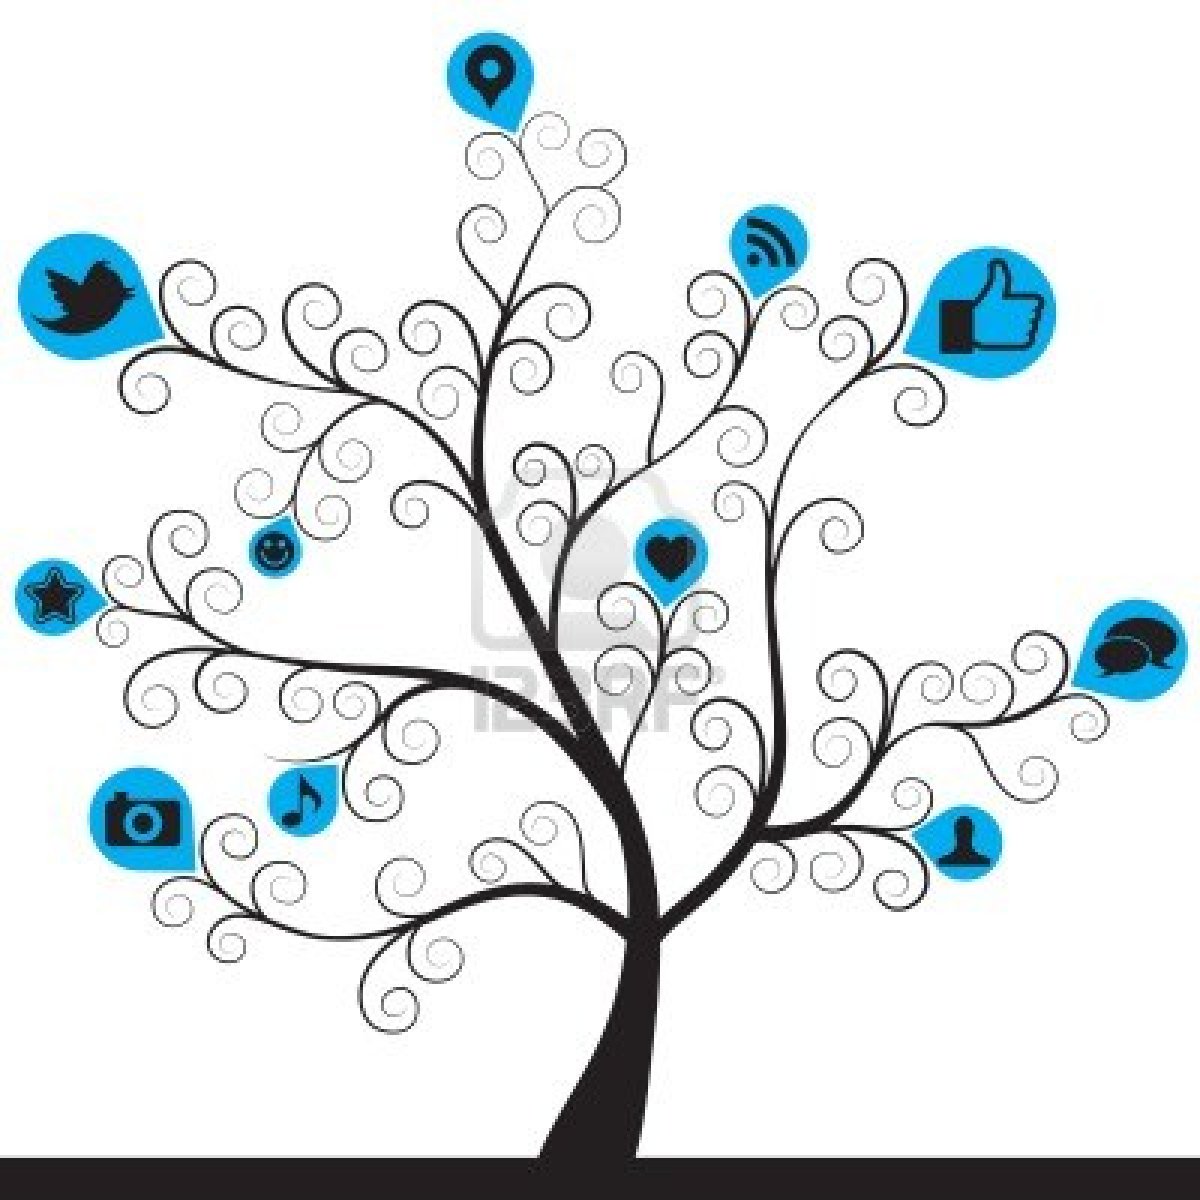 Social Media Tree HD For Wallpaper S